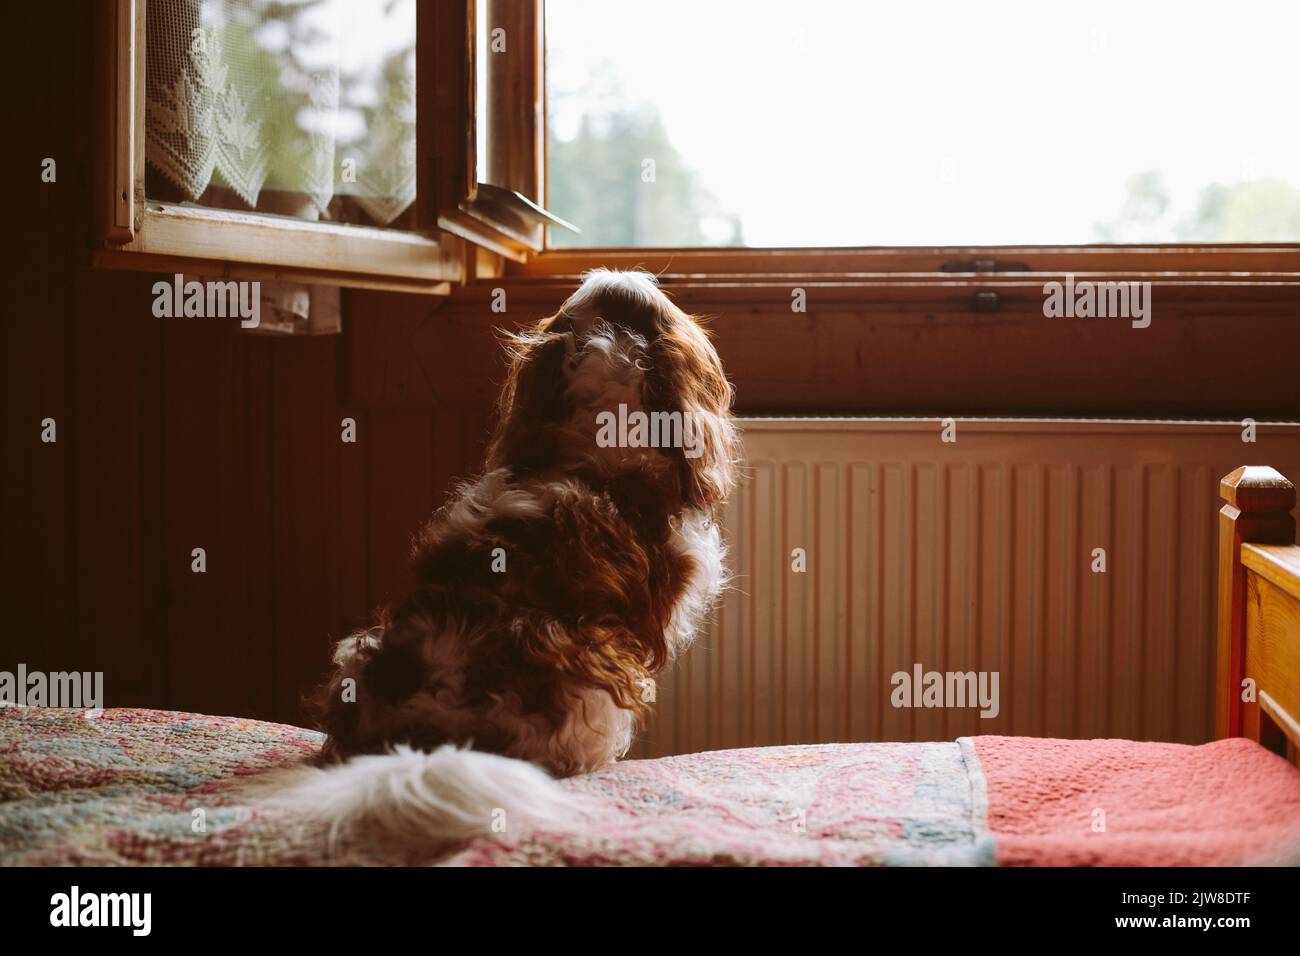 Rückansicht des niedlichen, lockigen braunen und weißen Hundes Cavalier King Charles coker Spaniel, der sitzt und aus dem Hausfenster schaut Stockfoto